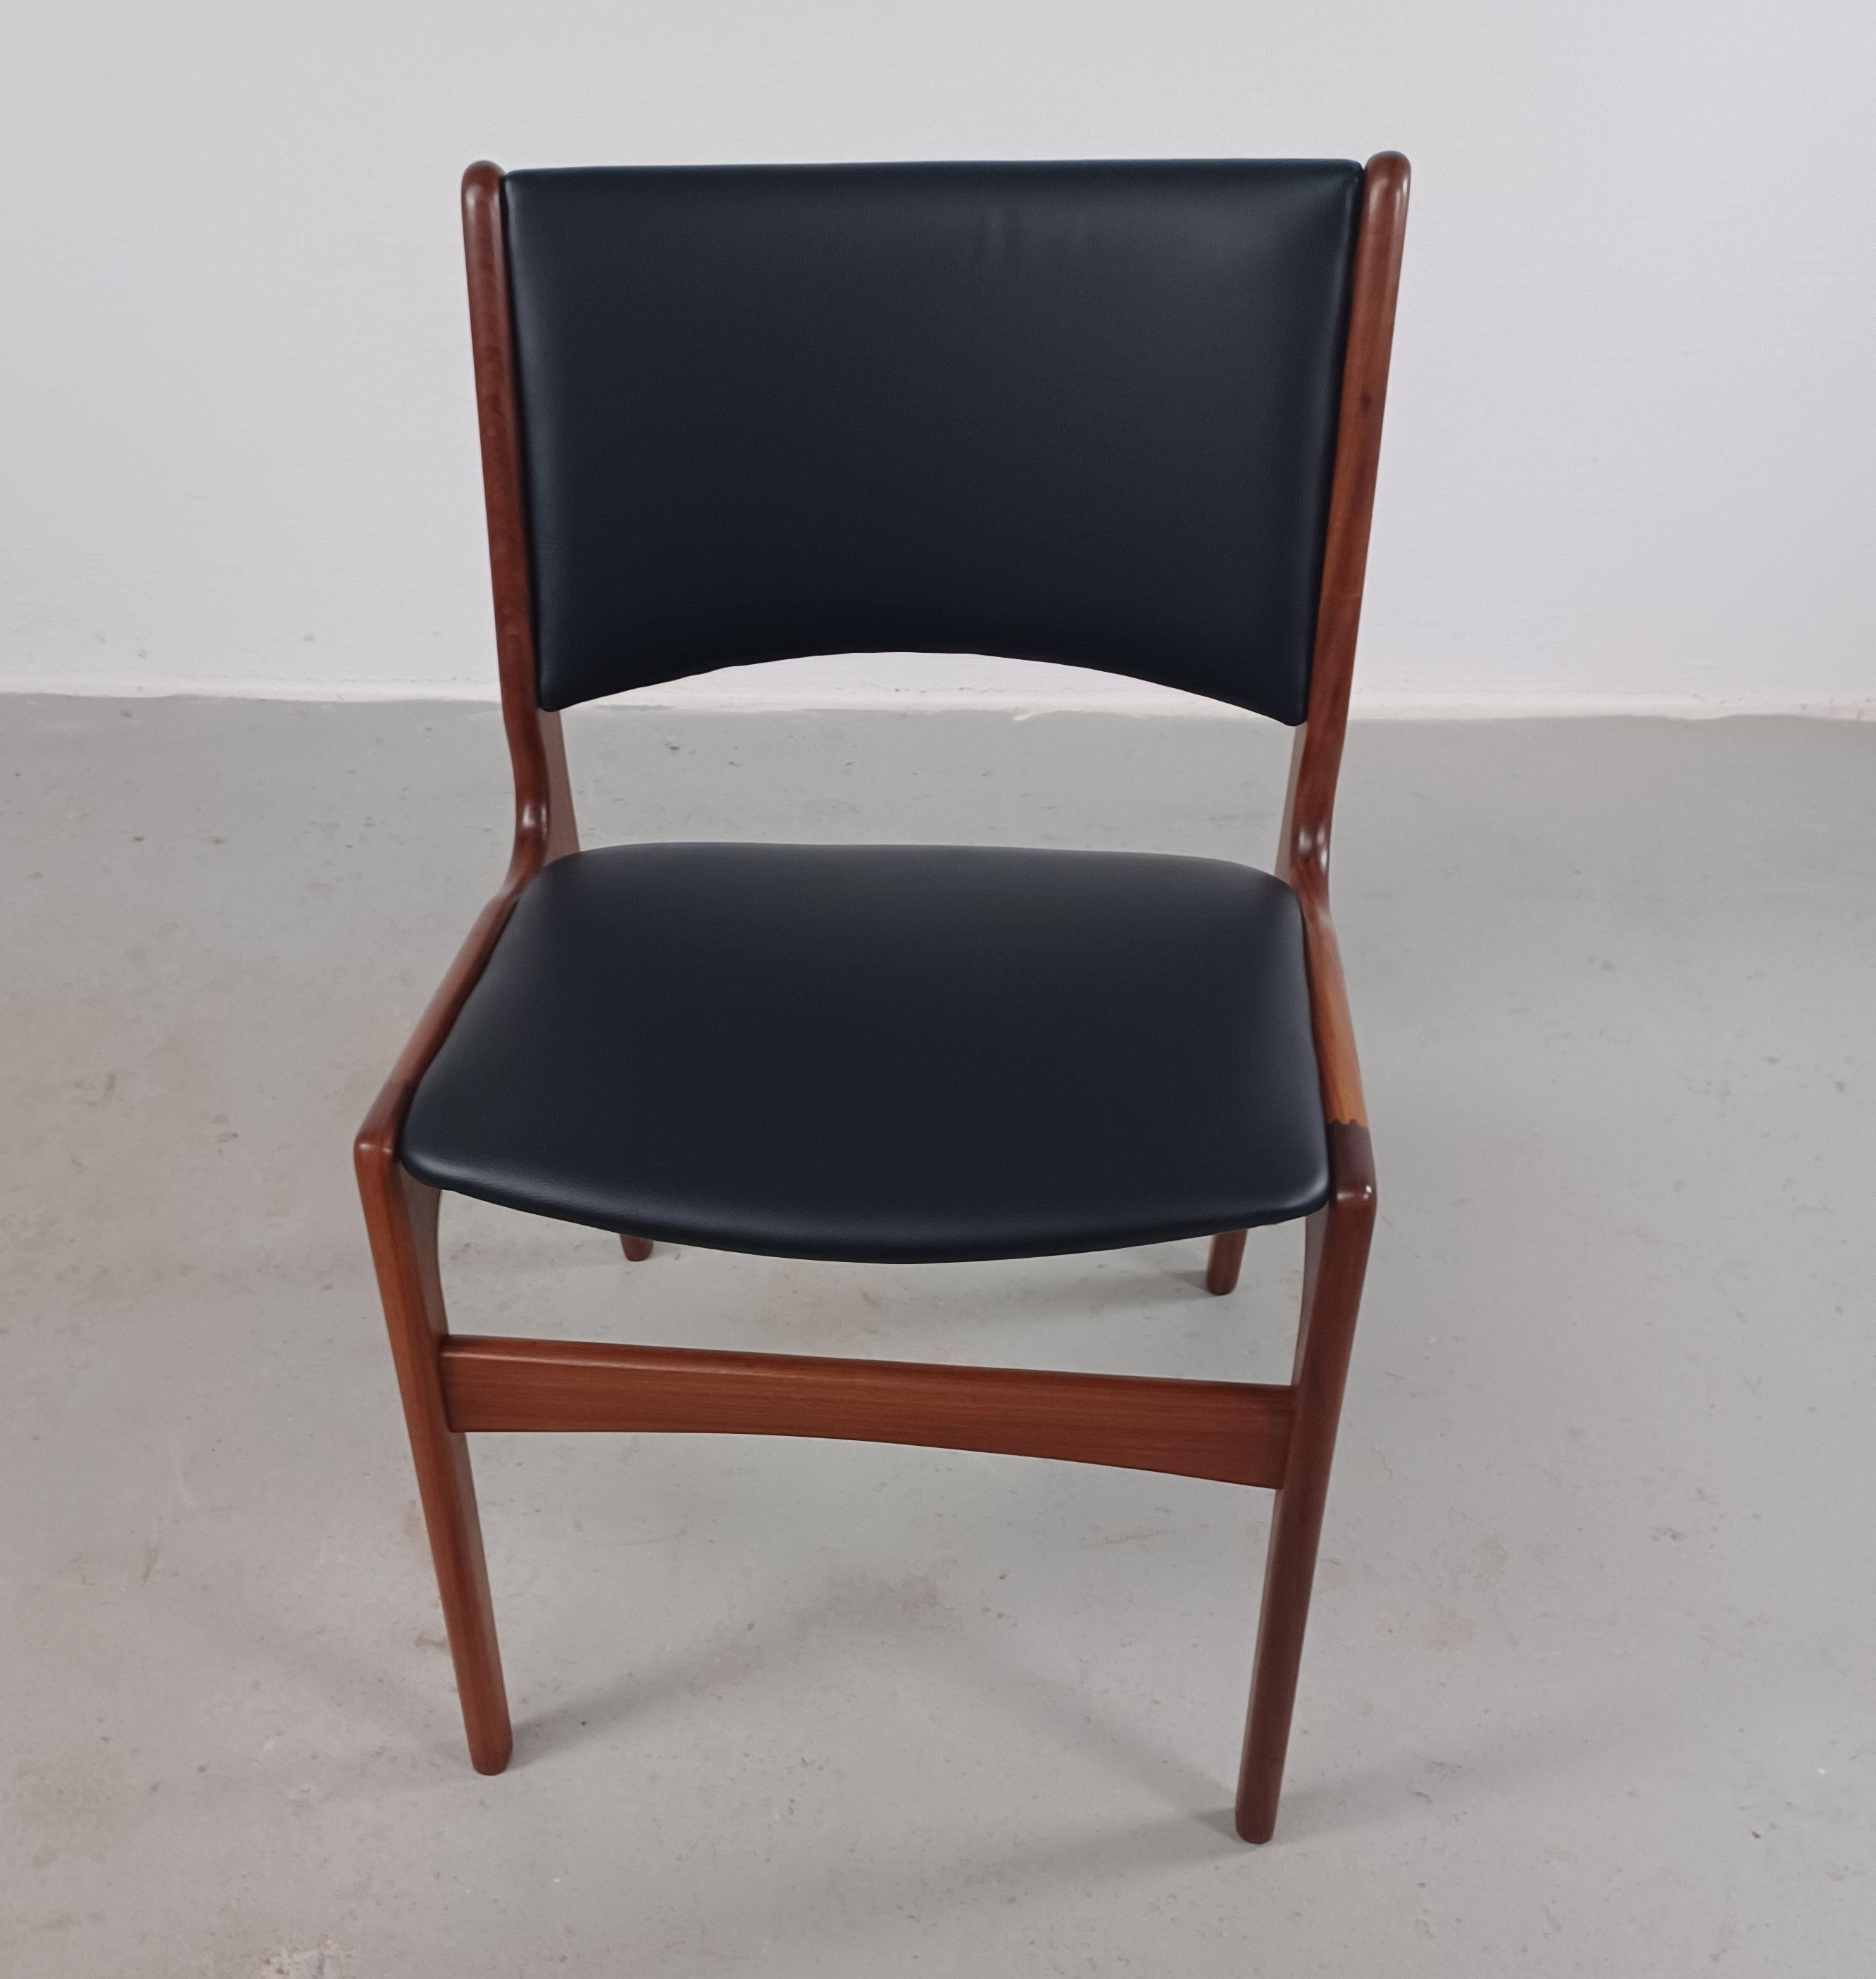 Ensemble de quatre chaises de salle à manger danoises Erik Buch entièrement restaurées, fabriquées par Anderstrup Møbelfabrik.

Comme toutes les chaises d'Erik Buchs, elles sont fabriquées en teck et ont un cadre en bois massif. Elles se